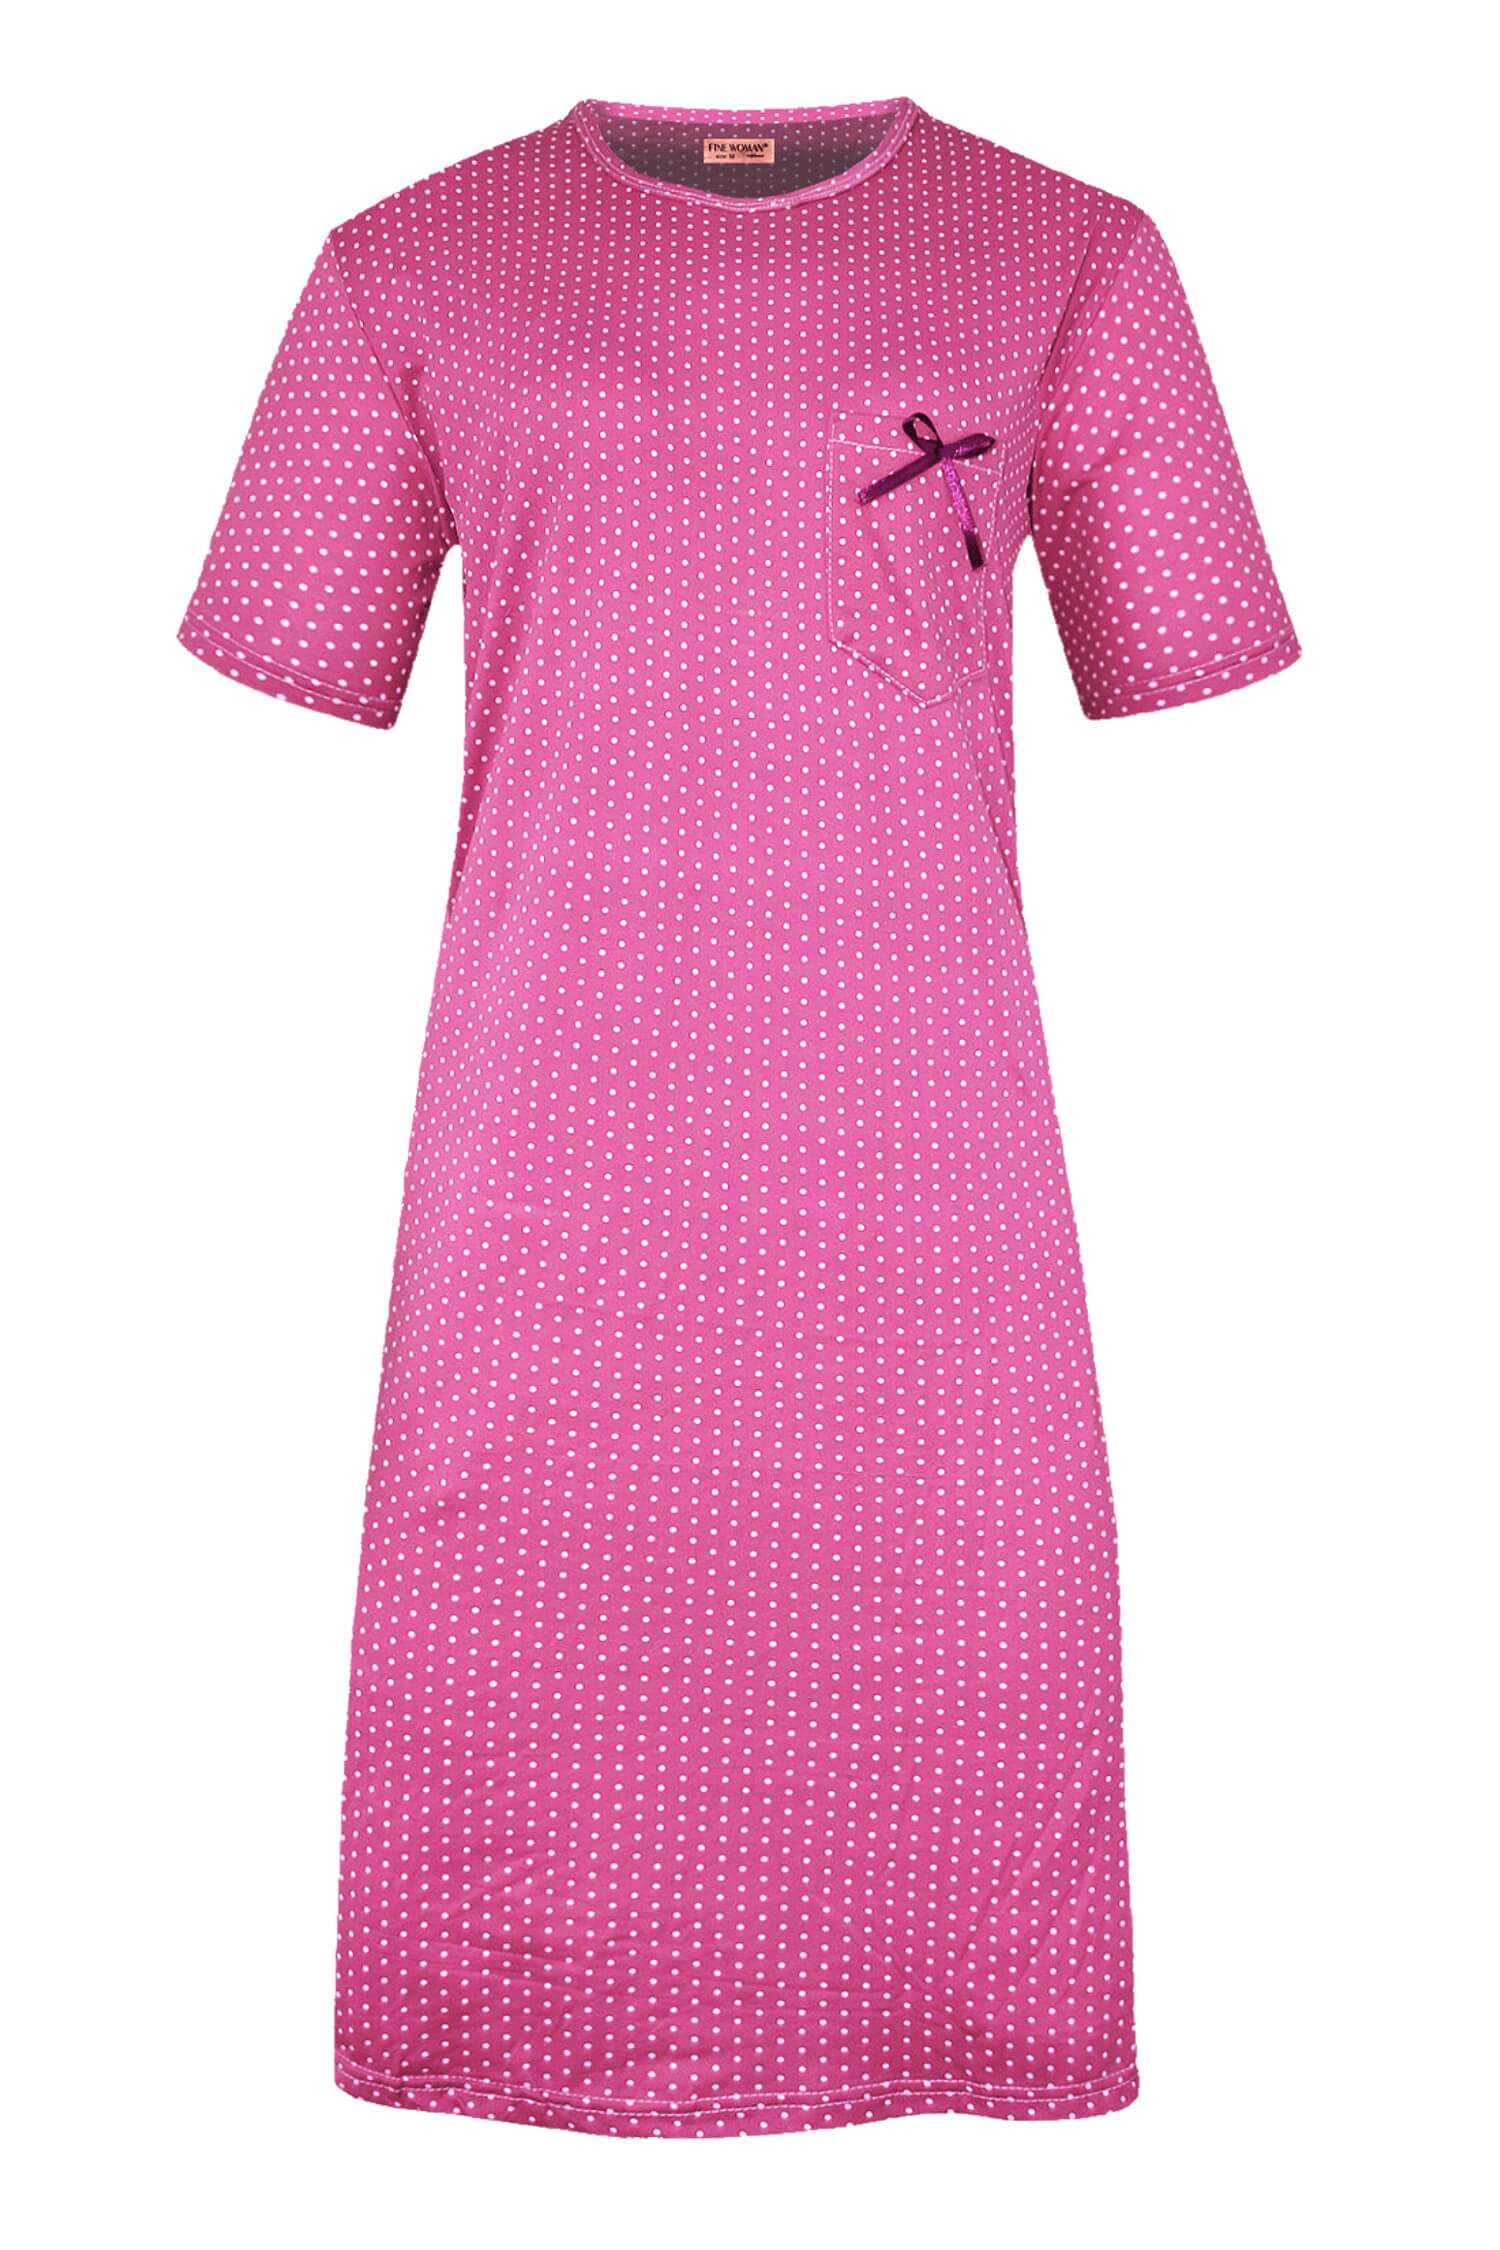 Monika dámská noční košile s puntíky 6533 L tmavě růžová